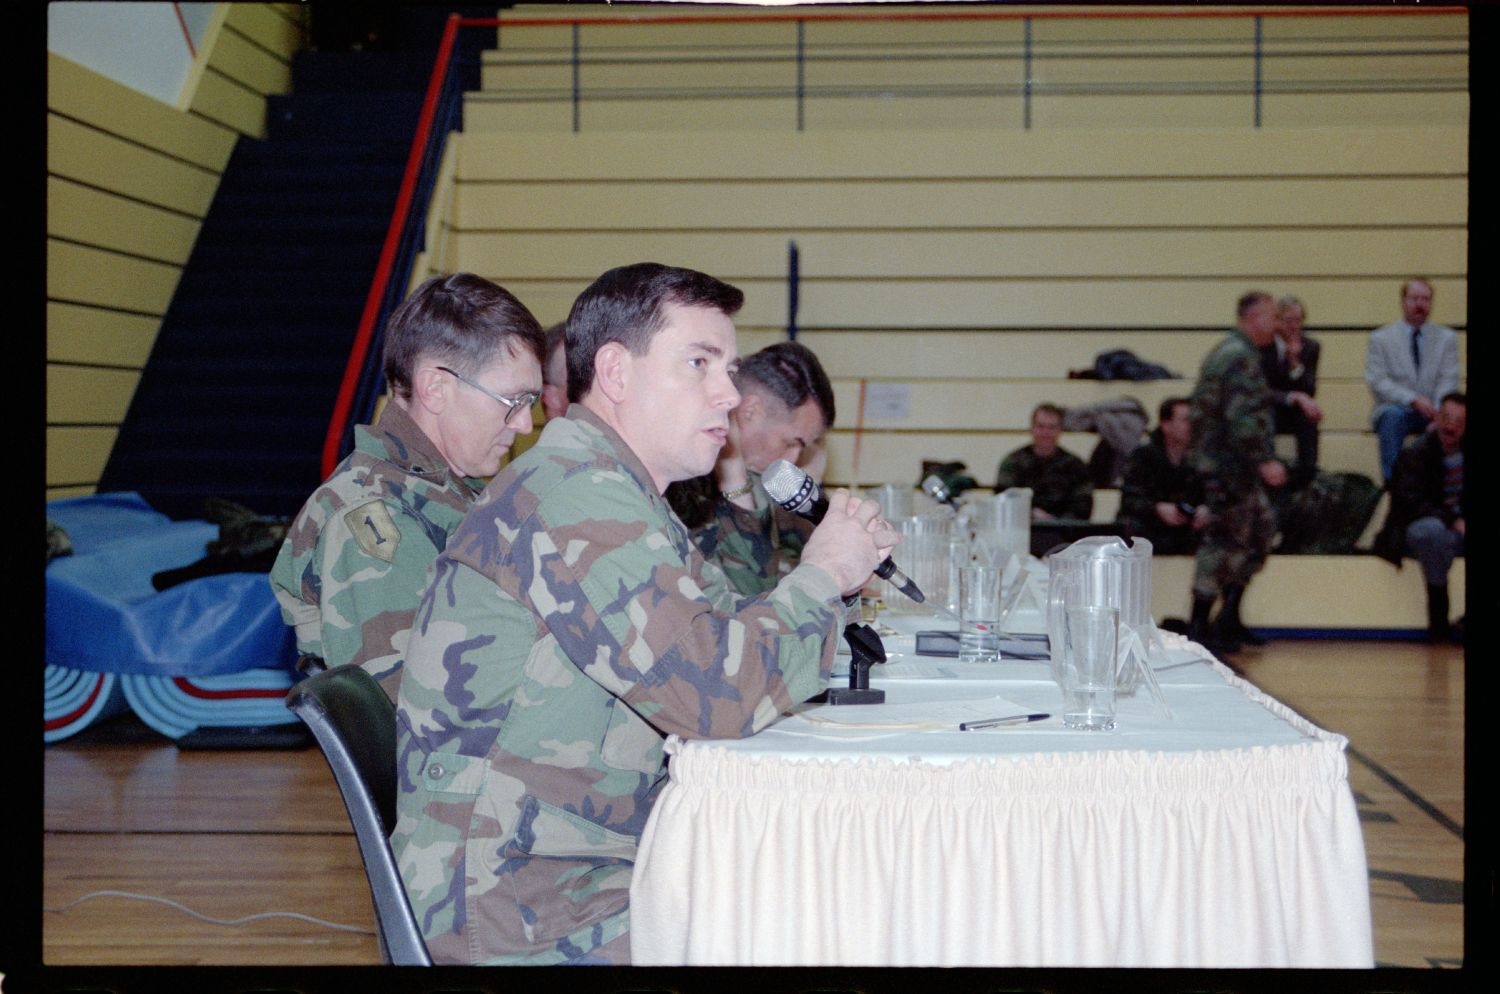 Fotografie: Town Hall Meeting der US-Community mit Brigadier General Sidney Shachnow im Cole Sports Center in Berlin-Dahlem (AlliiertenMuseum/U.S. Army Photograph Public Domain Mark)